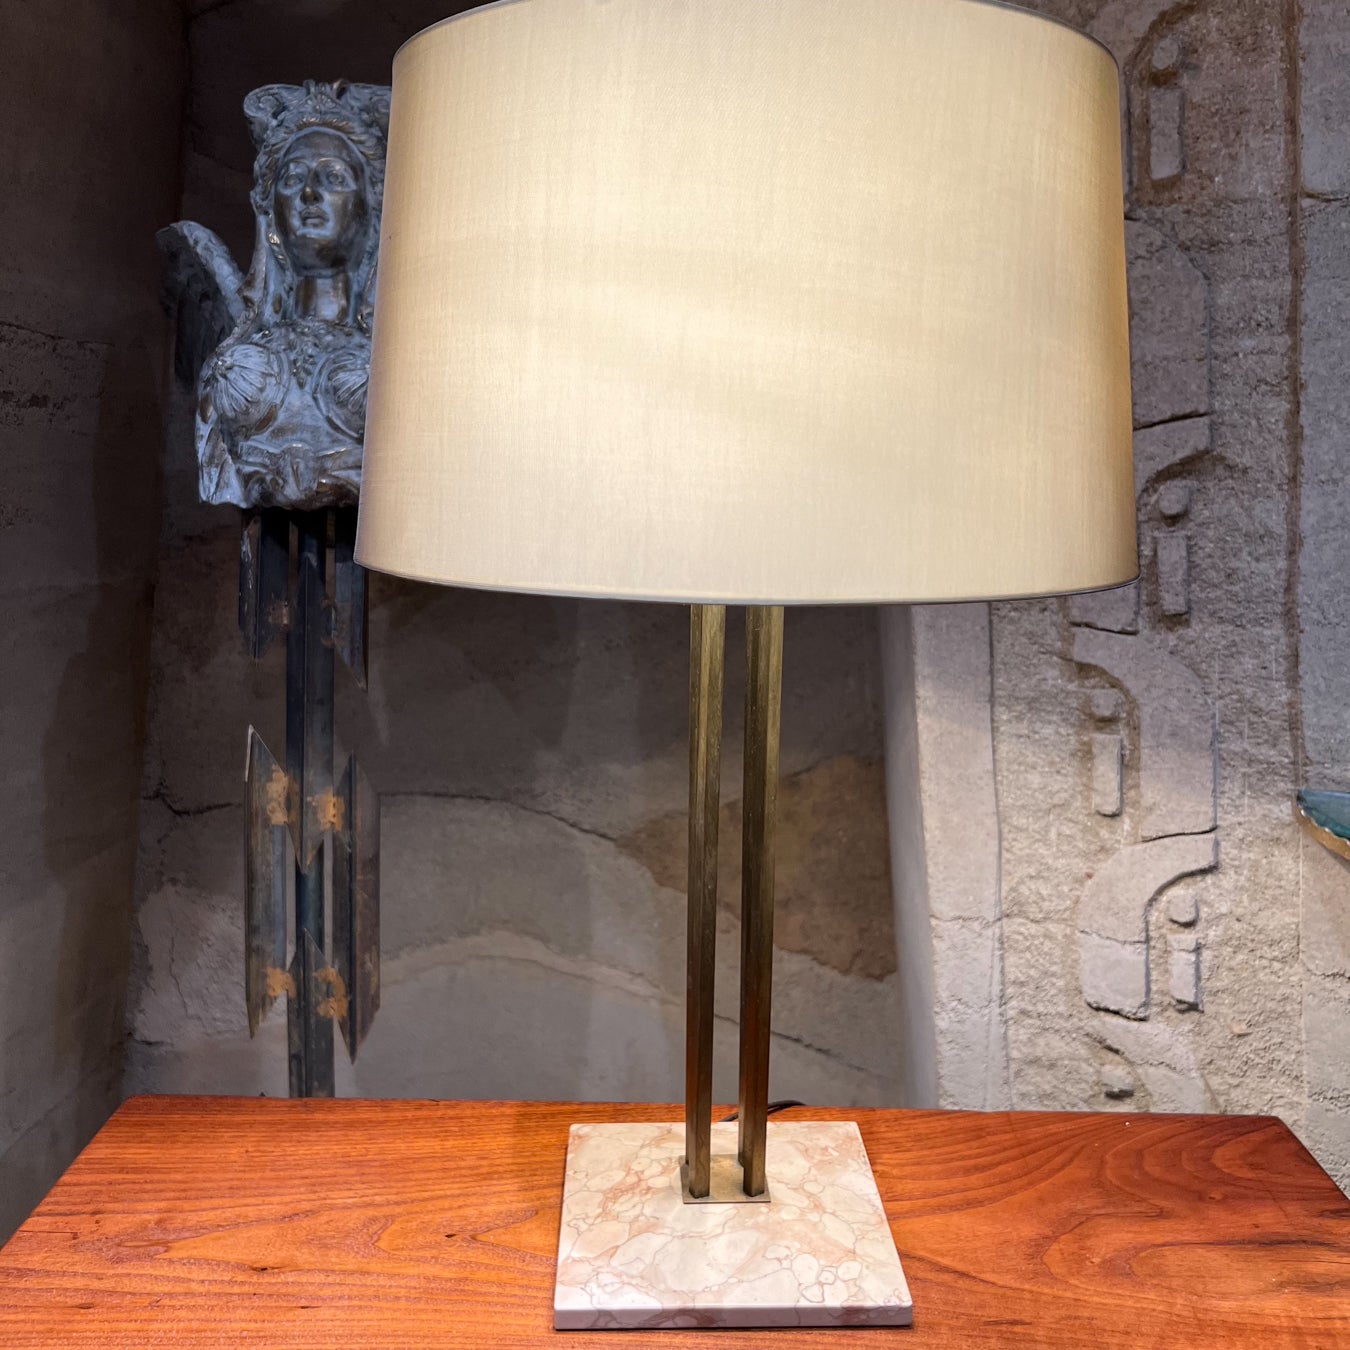 Lampe de table élégante des années 1950 conçue par Gerald Thurston et produite par Lightolier.
La lampe est soutenue par une base en marbre coloré et facetté. Prise de lumière à trois voies.
27 de haut à l'épi x 7,5 x 7,5
État original vintage